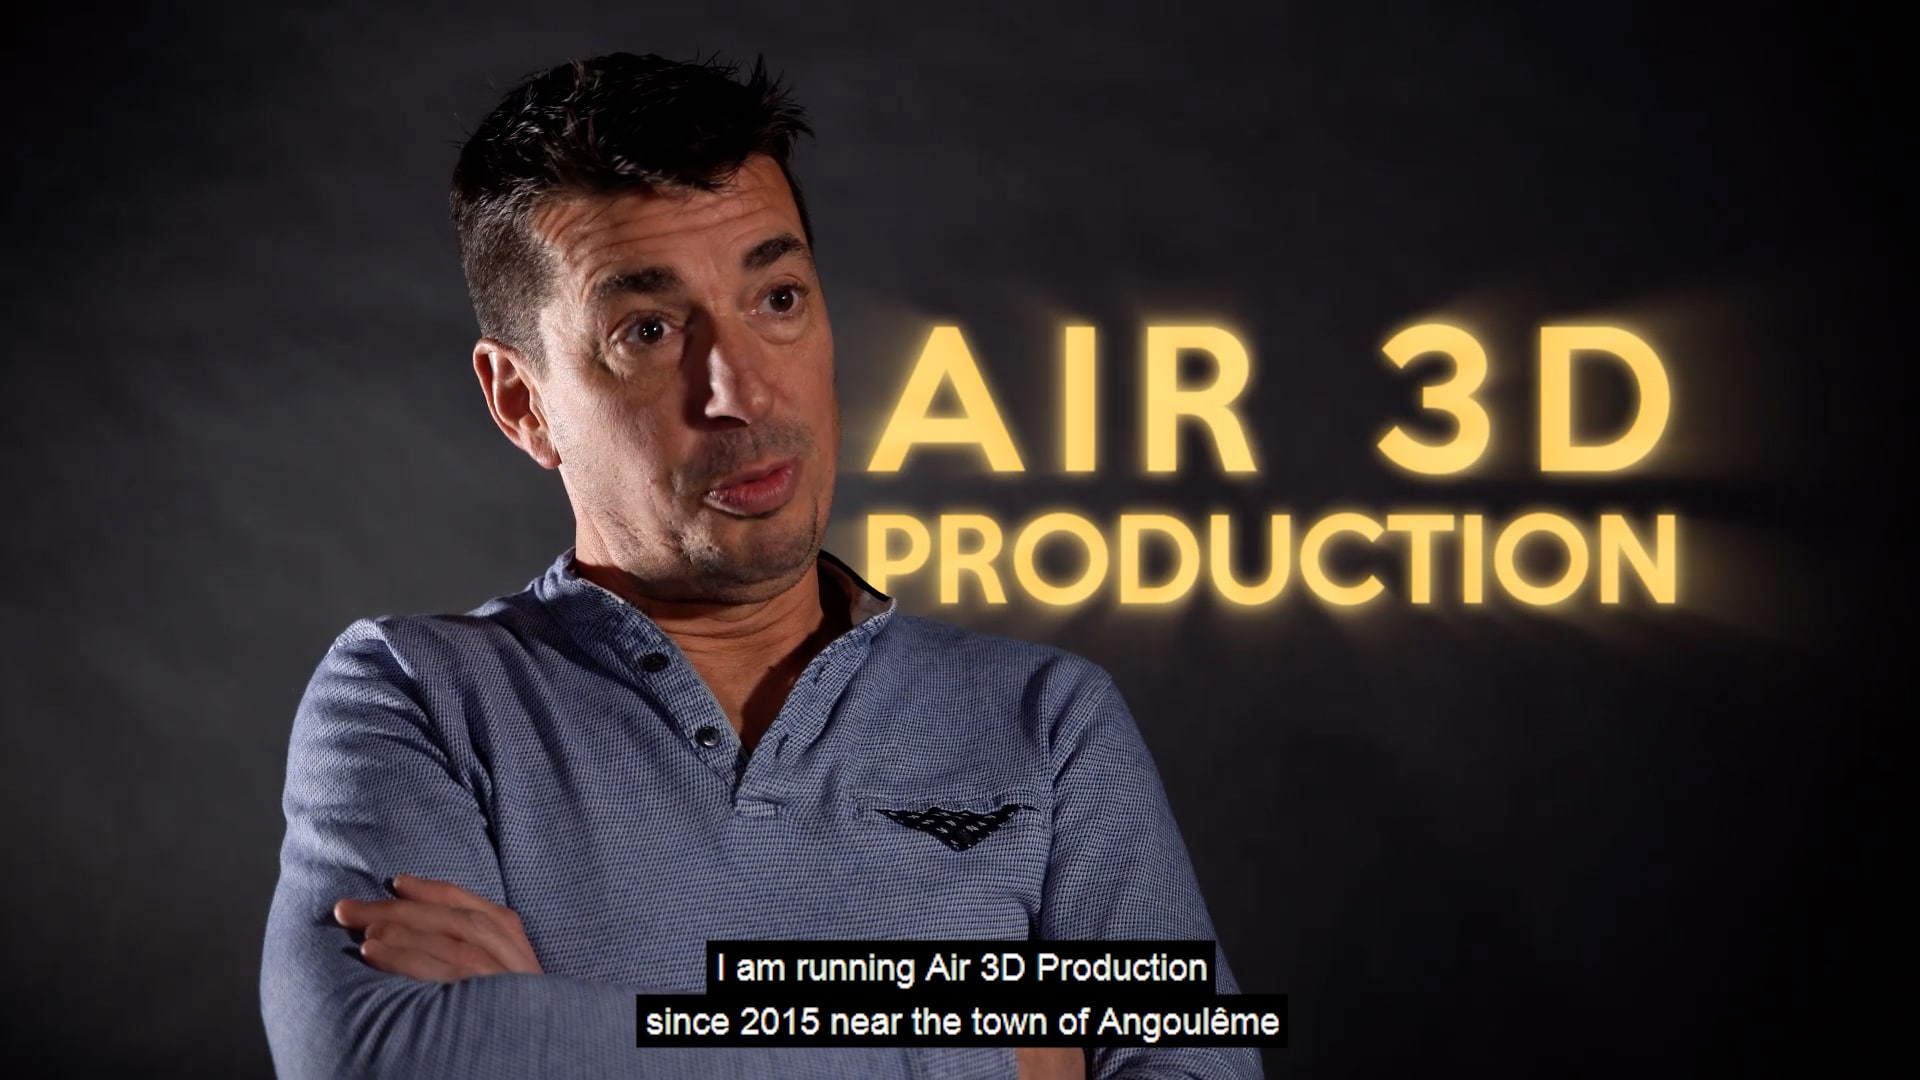 AIR 3D Production